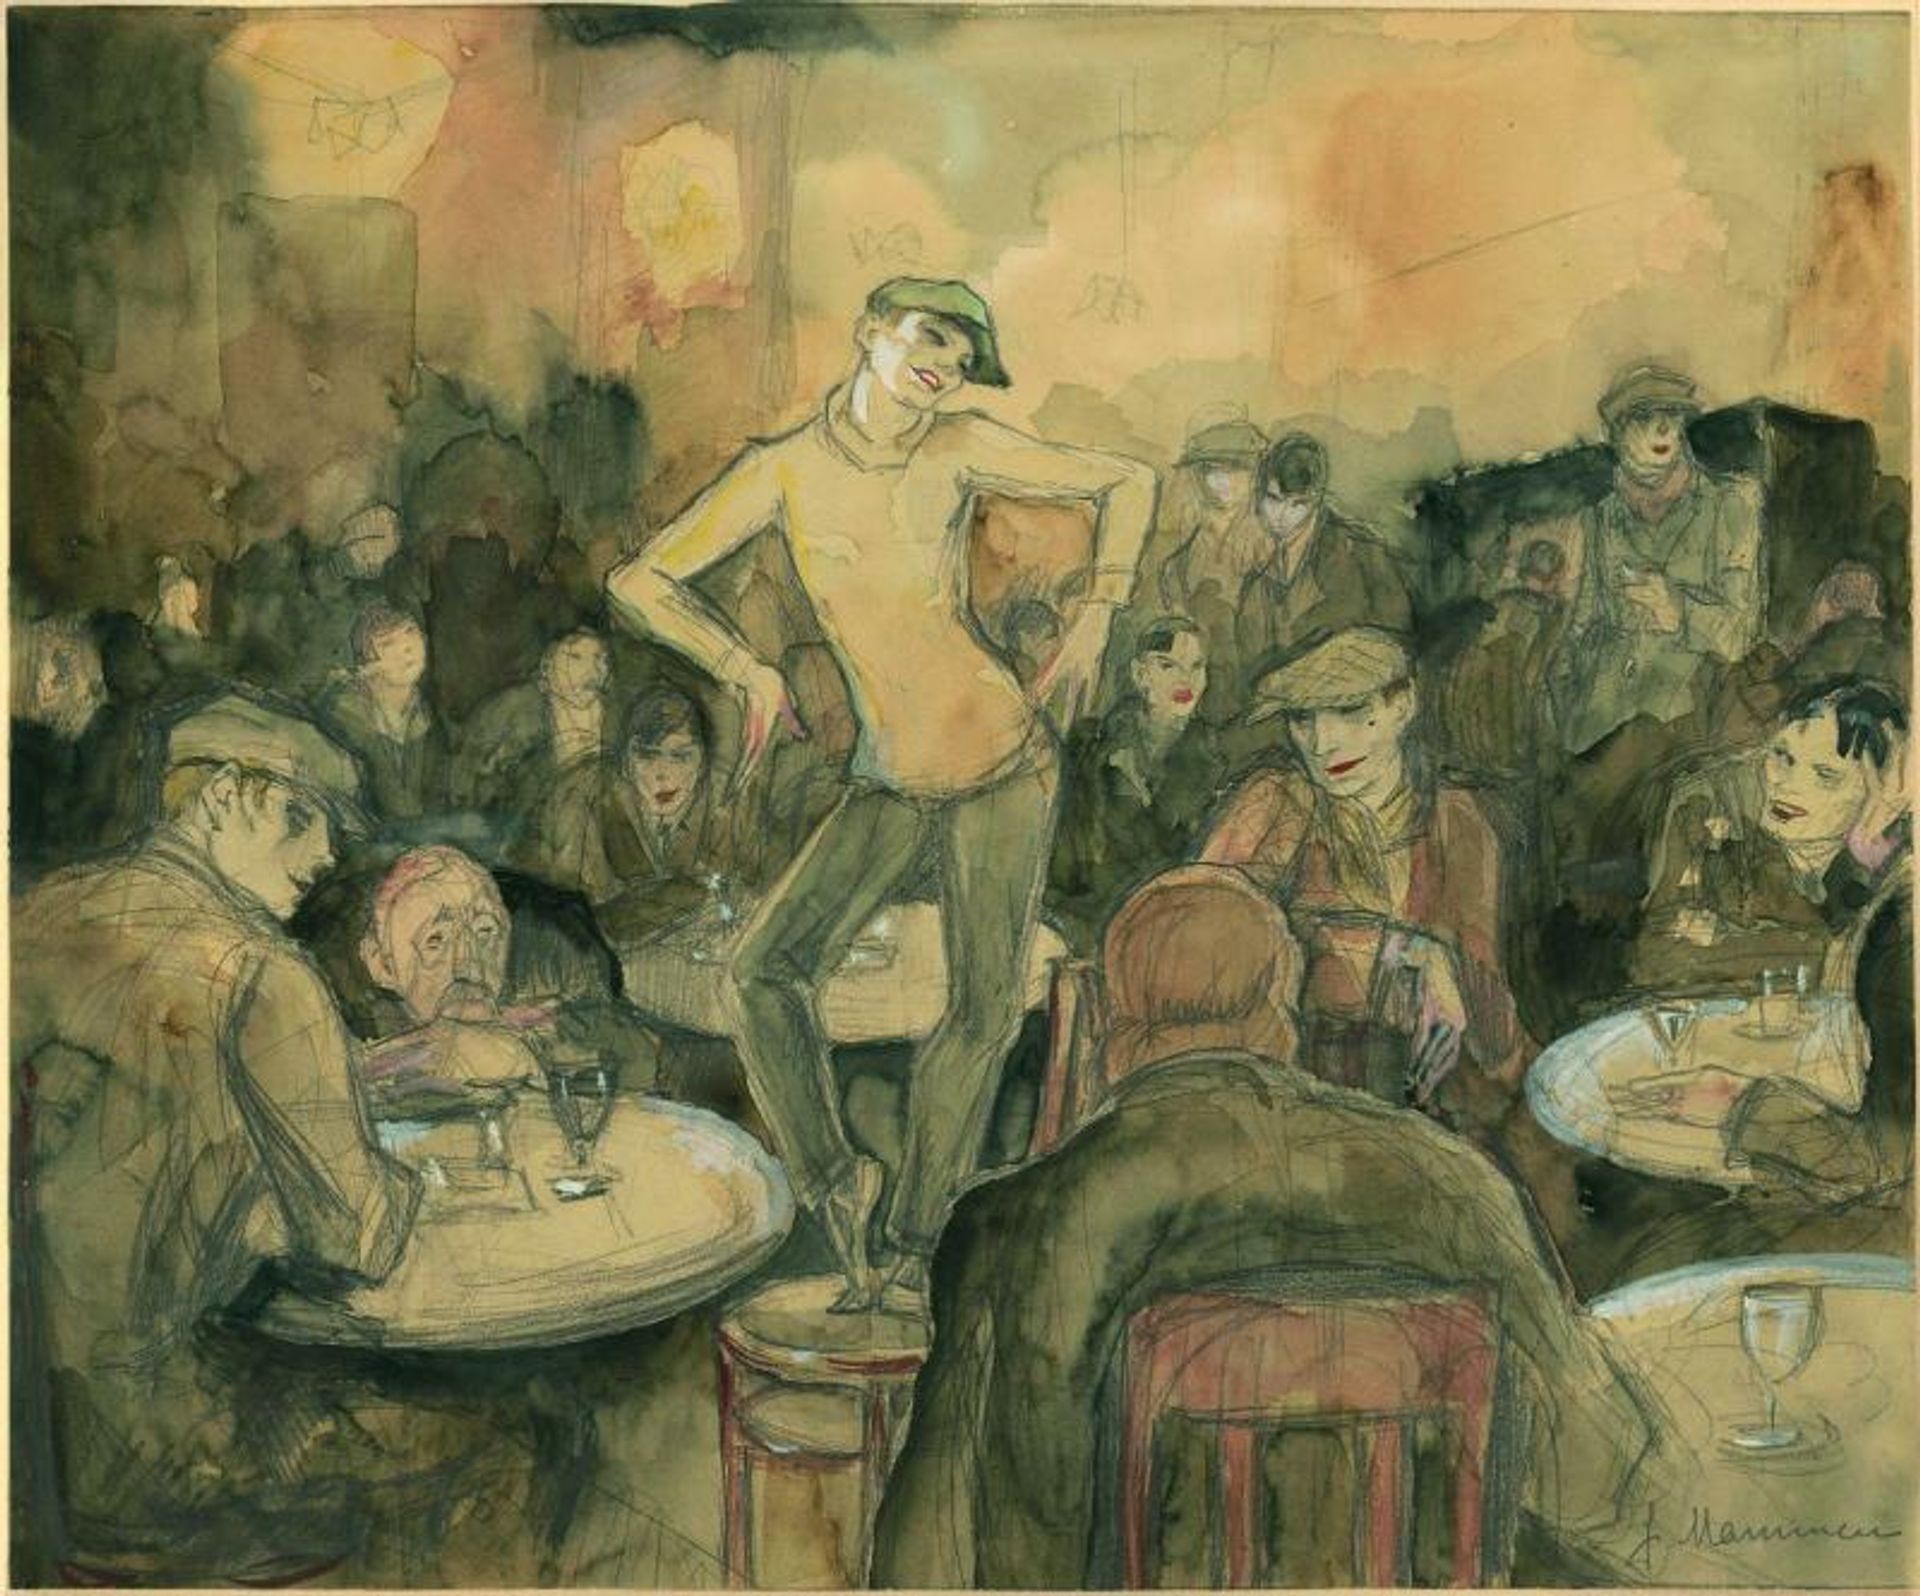 Jeanne Mammen, Transvestitenlokal, vers 1931. Exposition « Allemagne / Années 1920 / Nouvelle objectivité / August Sander ». Courtesy Centre Pompidou